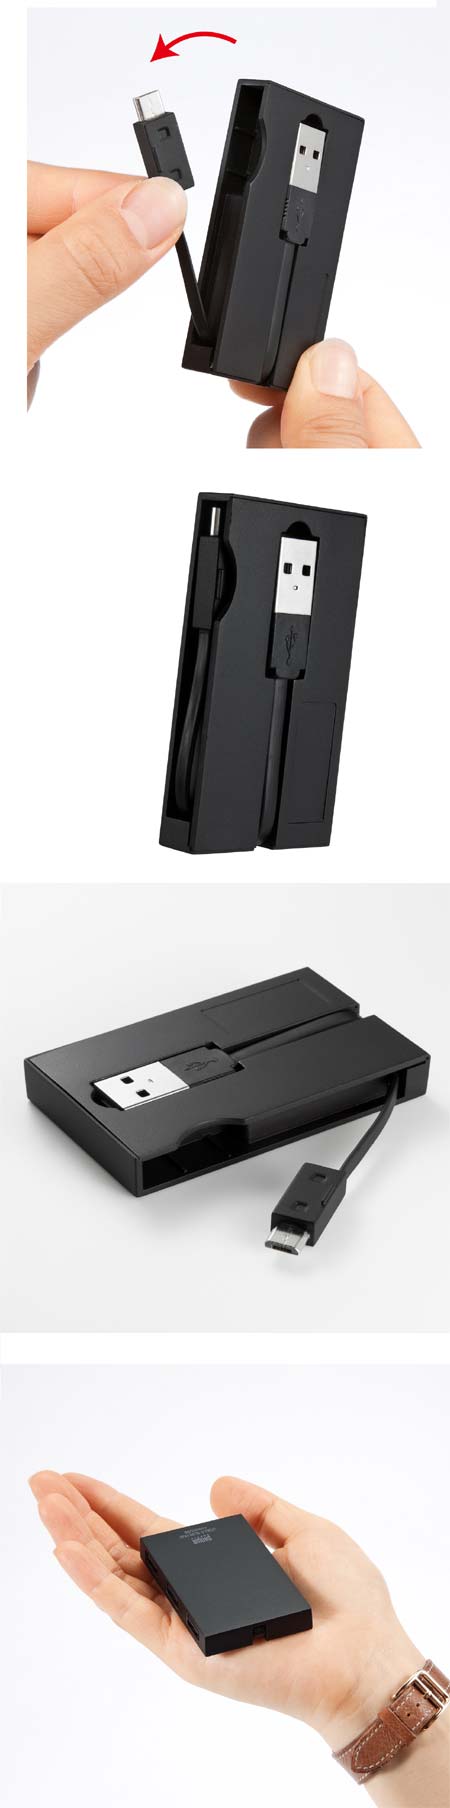 Sanwa предлагает USB 2.0 хаб USB-HMU403